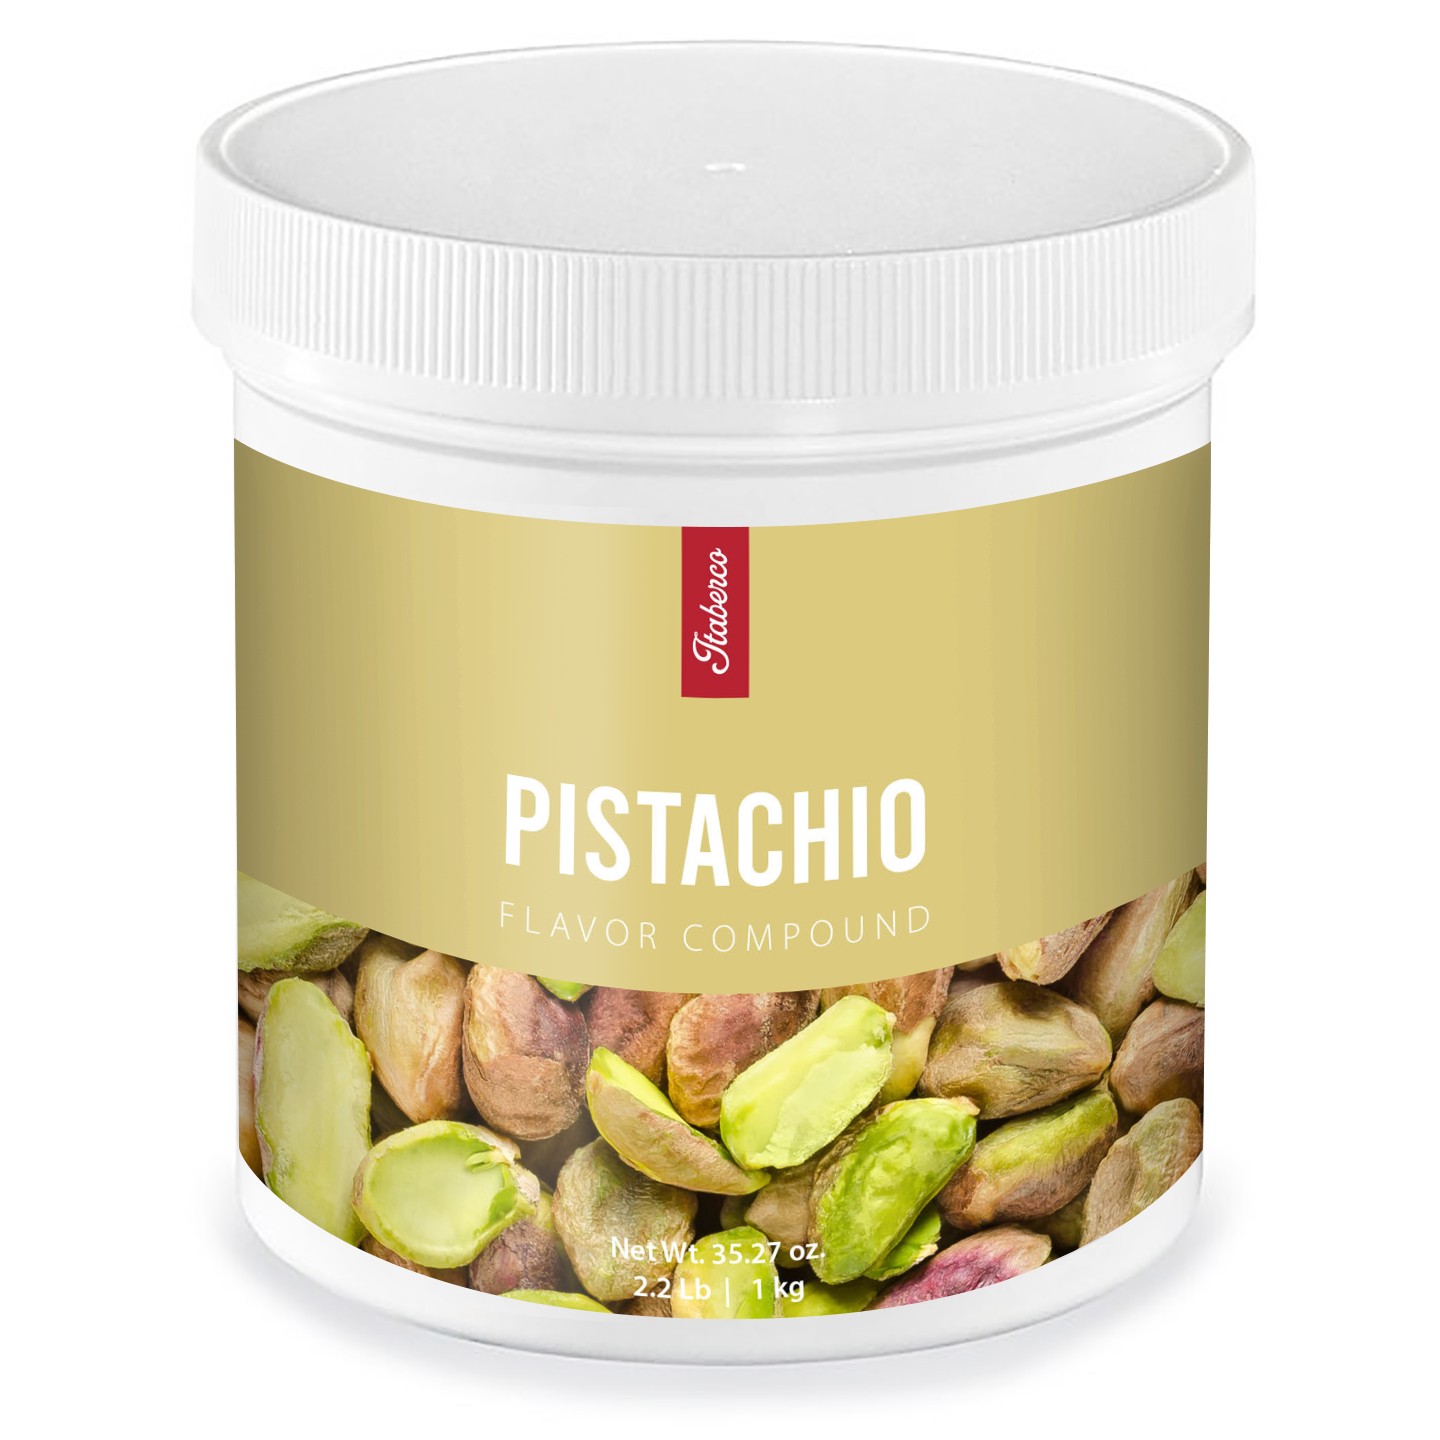 Pistachio Flavor Compound